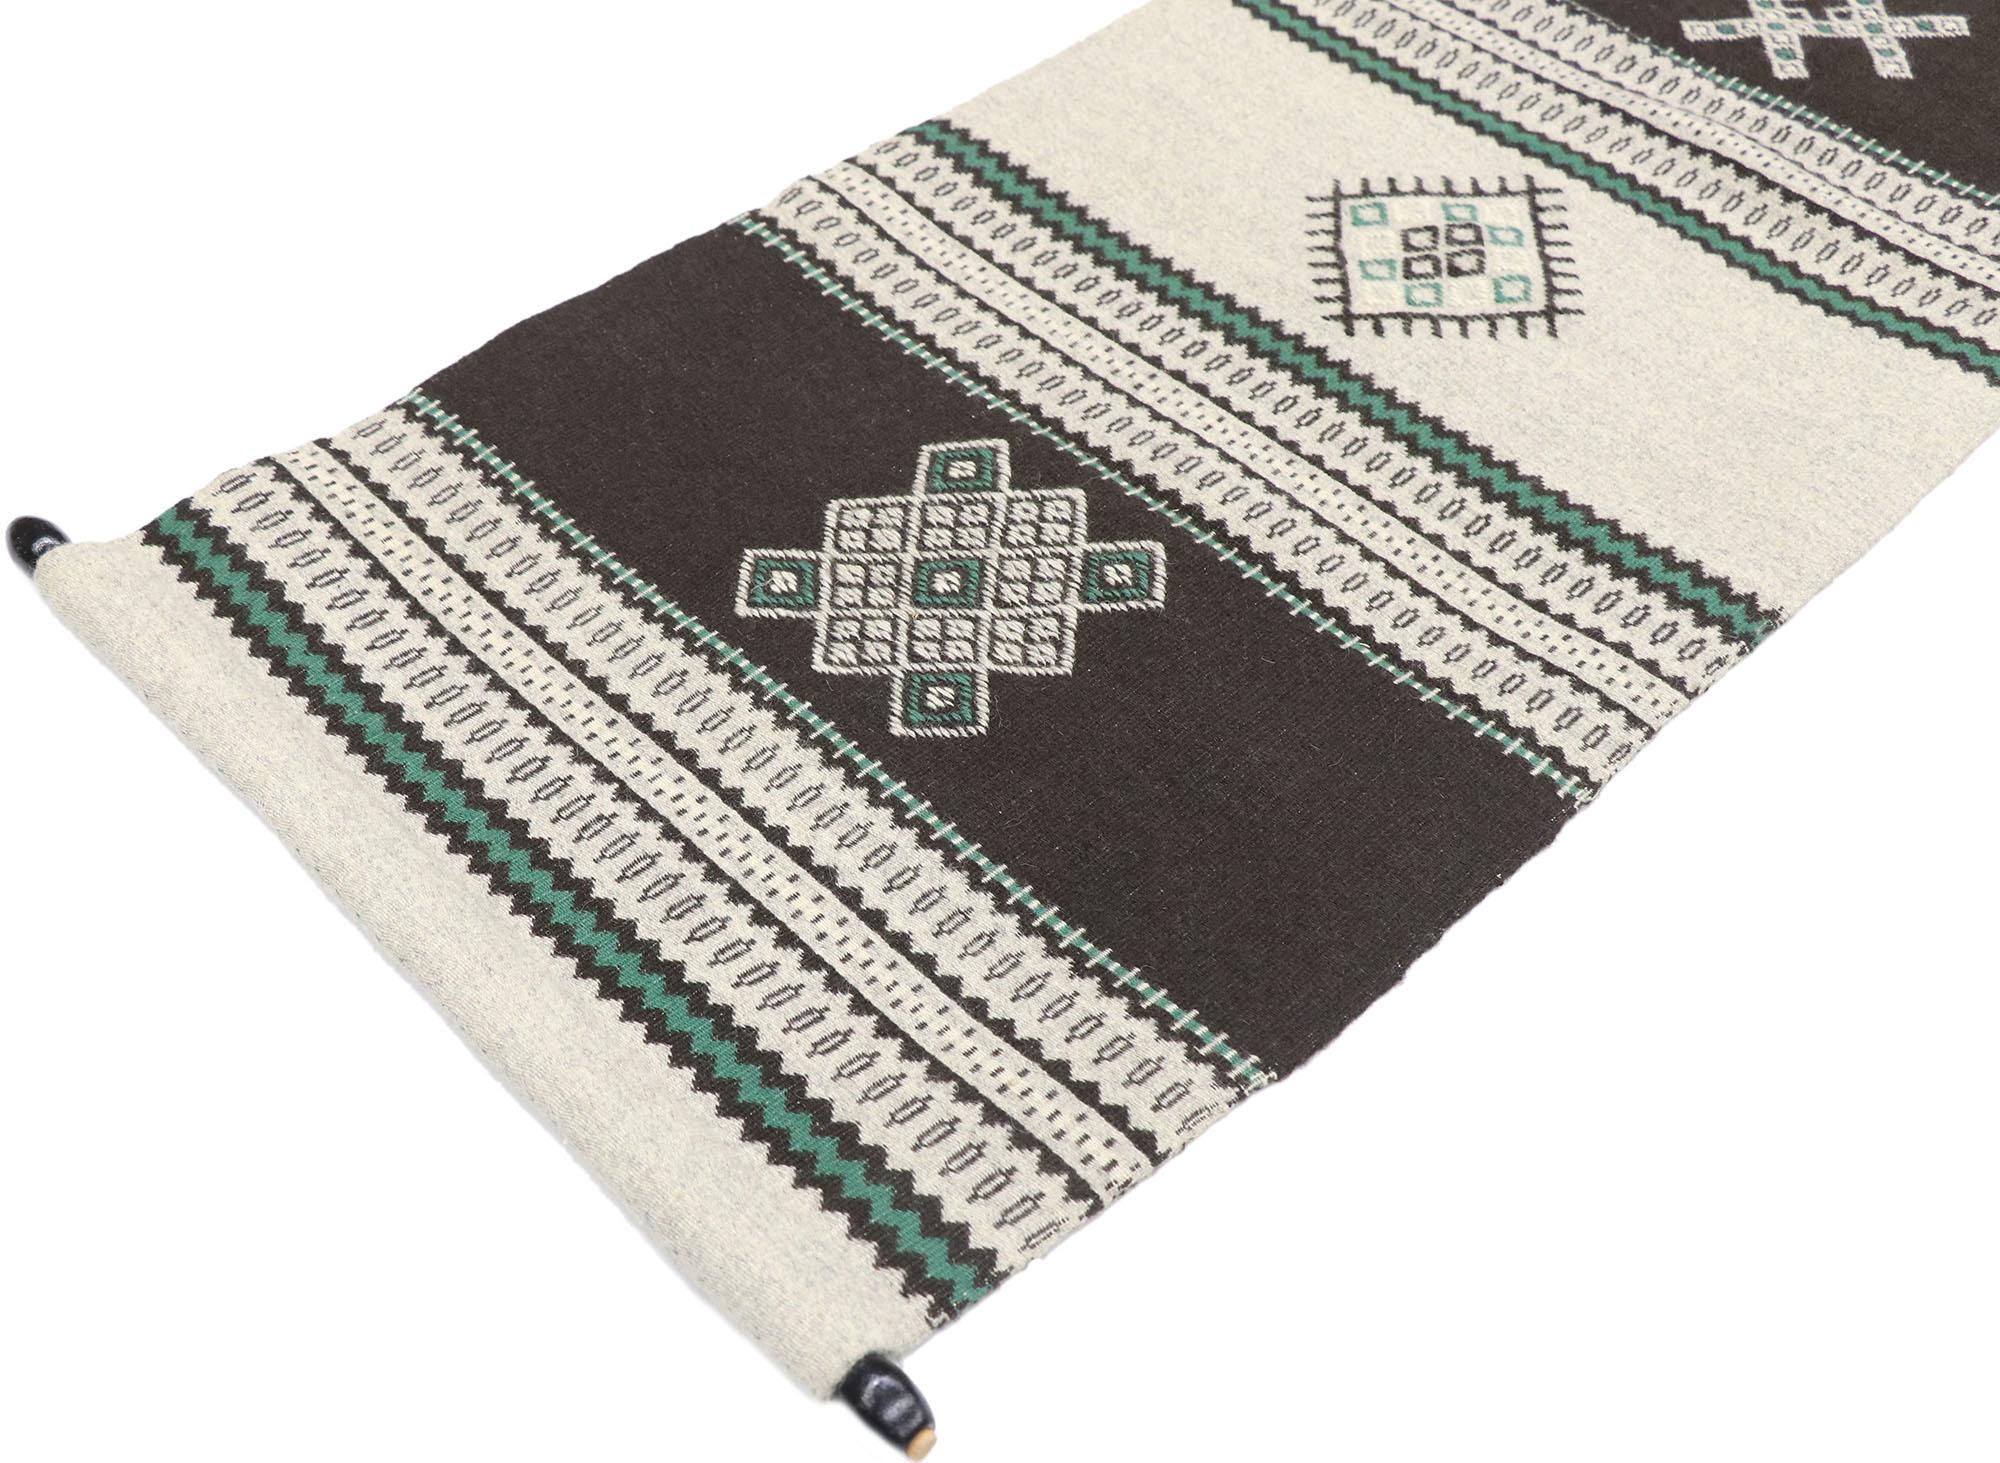 77766 Türkischer Vintage-Textil-Teppich, 01'06 x 04'08.
Mit seinem nomadischen Charme, seinen unglaublichen Details und seiner Struktur ist dieser textile Wandbehang im Vintage-Stil eine fesselnde Vision von gewebter Schönheit. Das auffällige